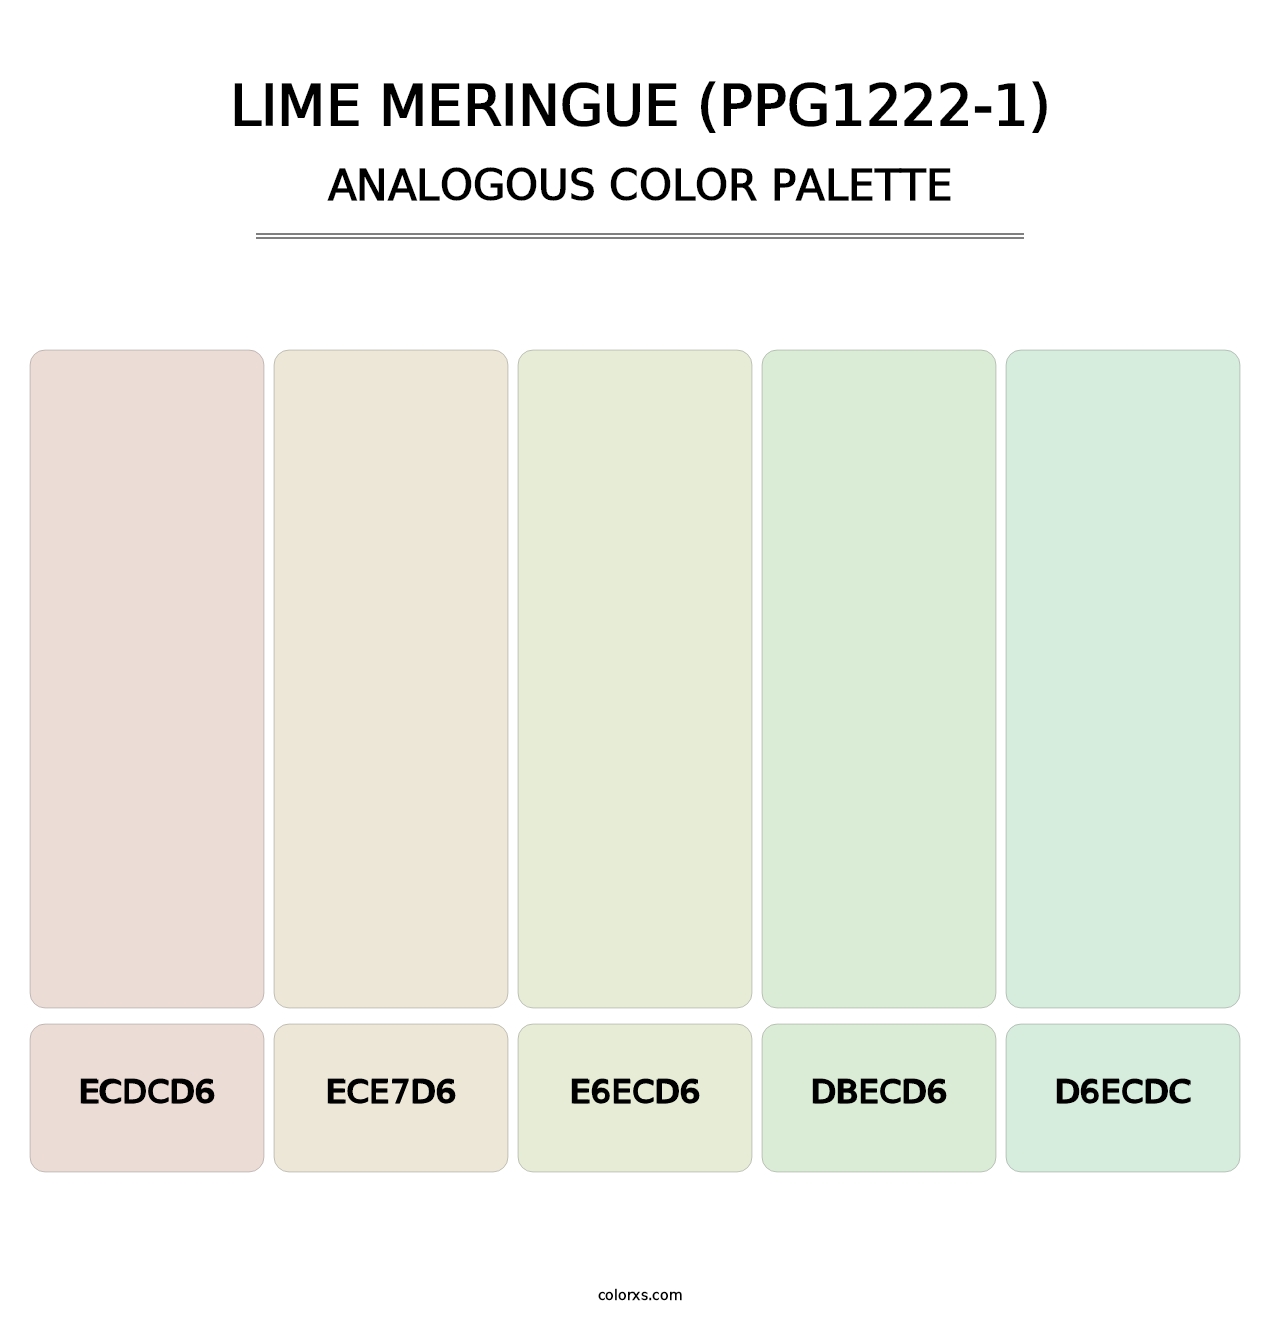 Lime Meringue (PPG1222-1) - Analogous Color Palette